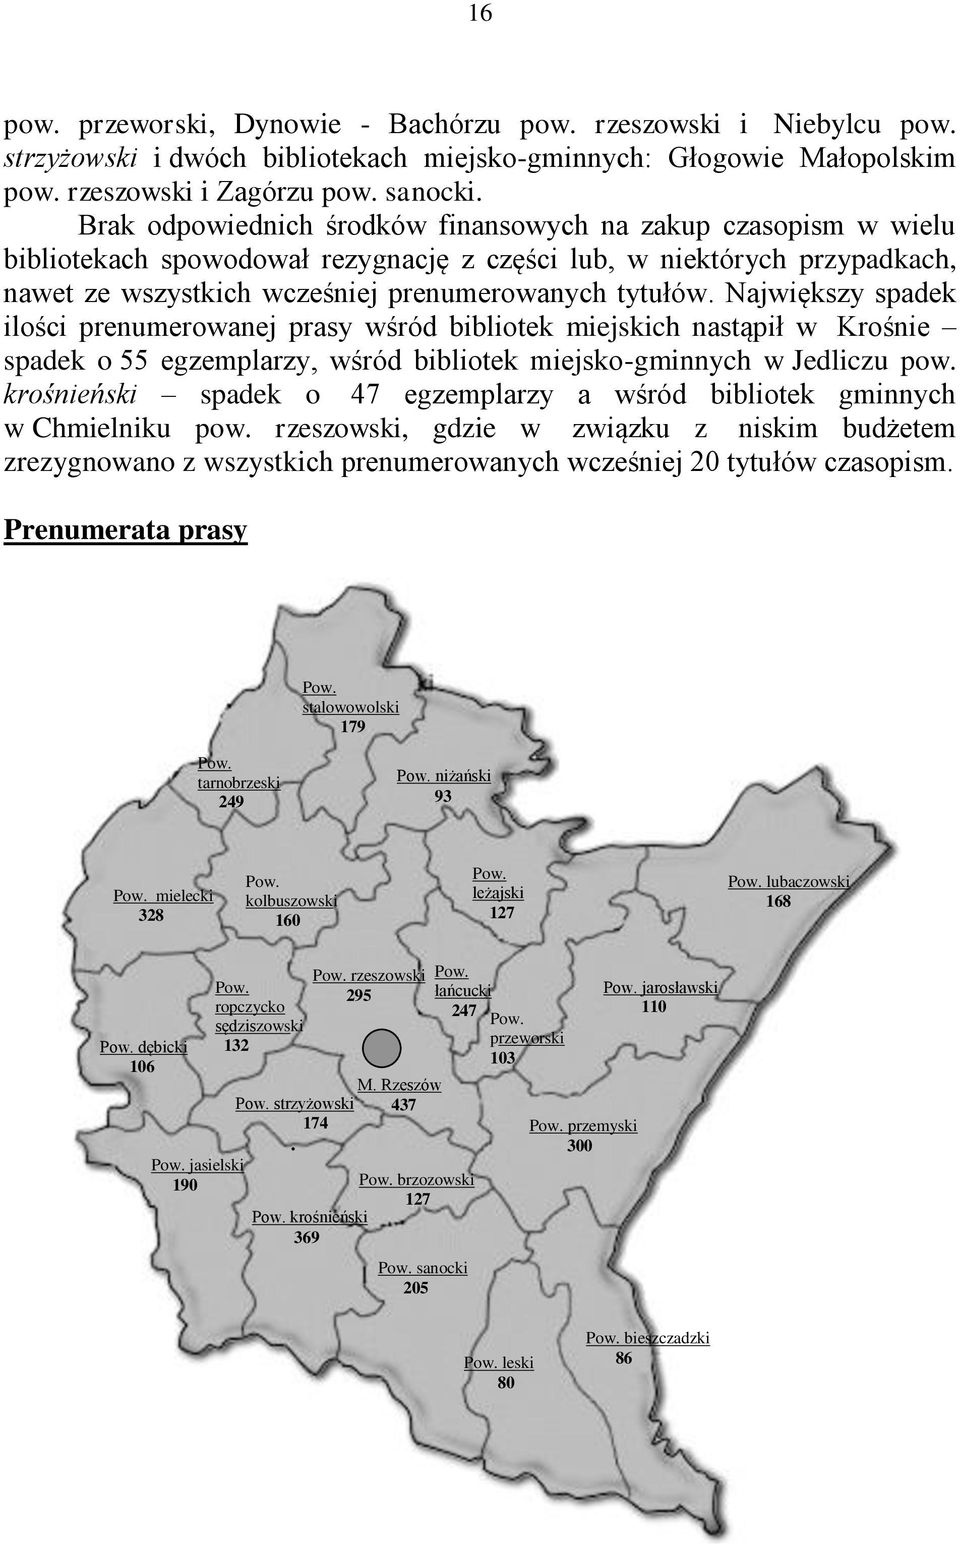 Największy spadek ilości prenumerowanej prasy wśród bibliotek miejskich nastąpił w Krośnie spadek o 55 egzemplarzy, wśród bibliotek miejsko-gminnych w Jedliczu pow.